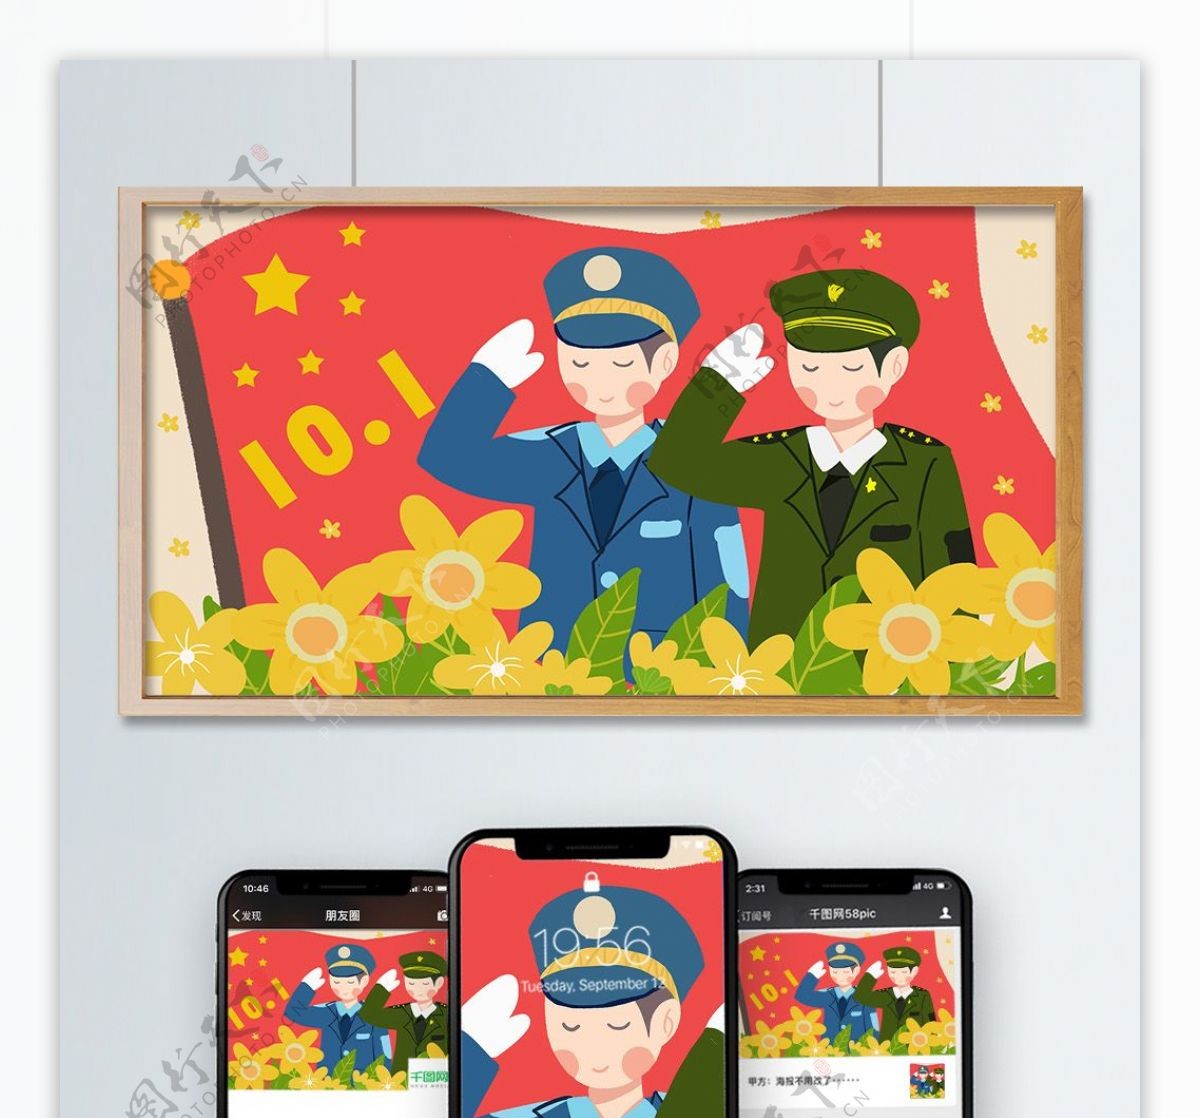 欢庆国庆节卡通手绘插画小清新风警察红旗